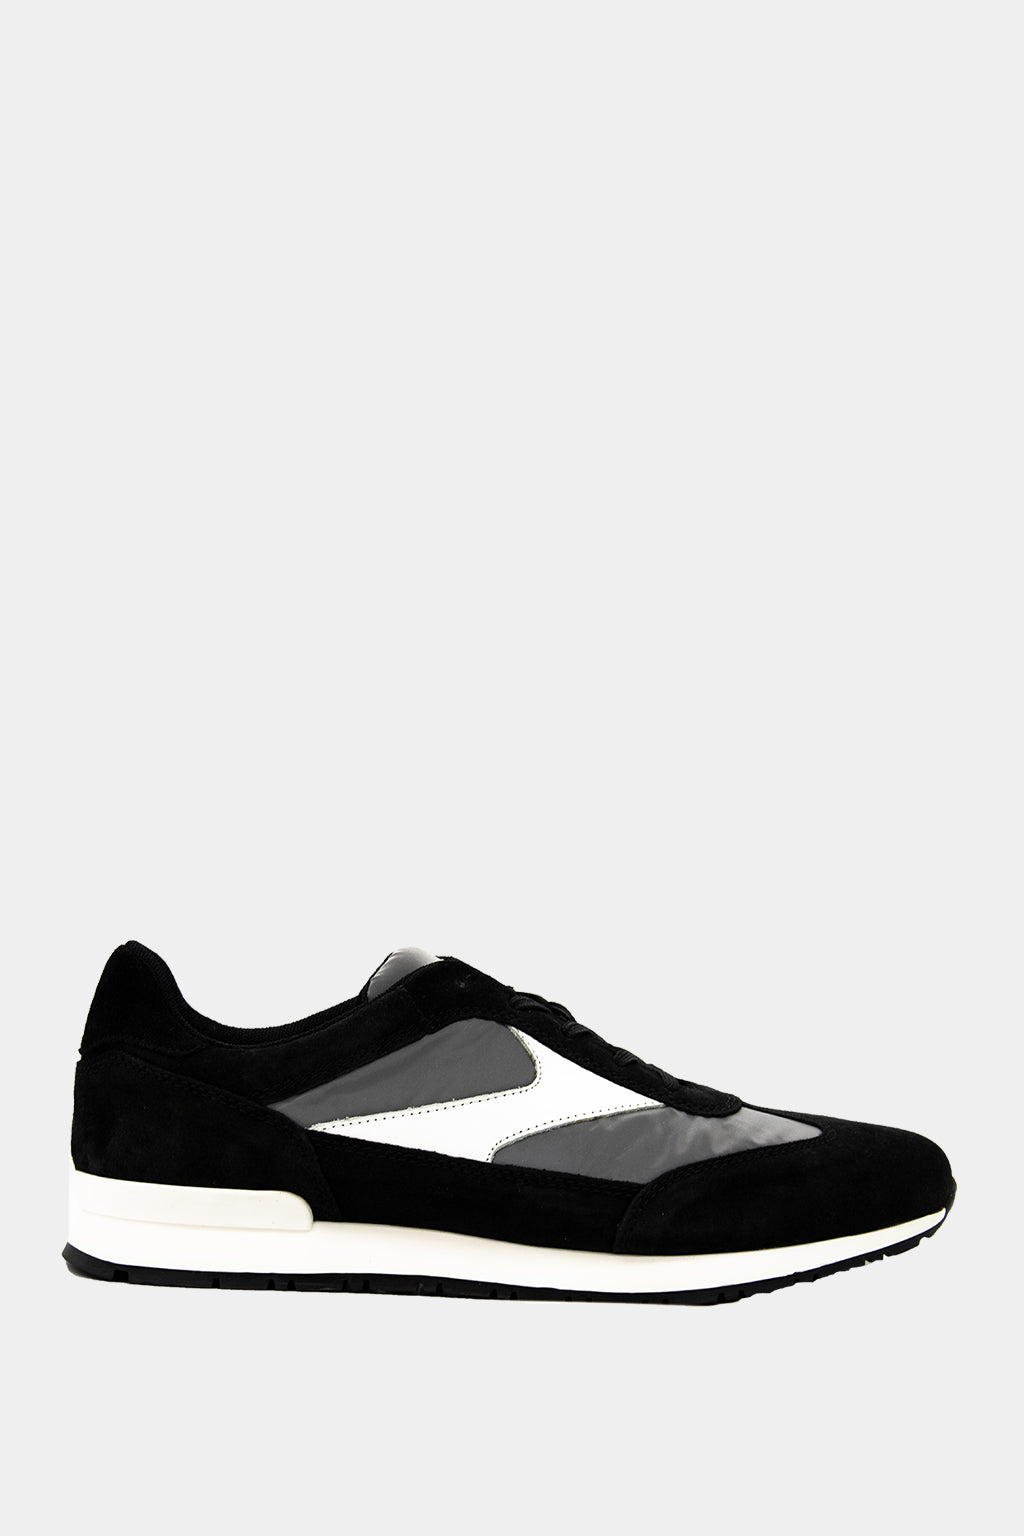 Paul & Shark Yatching - Sneaker Shoes